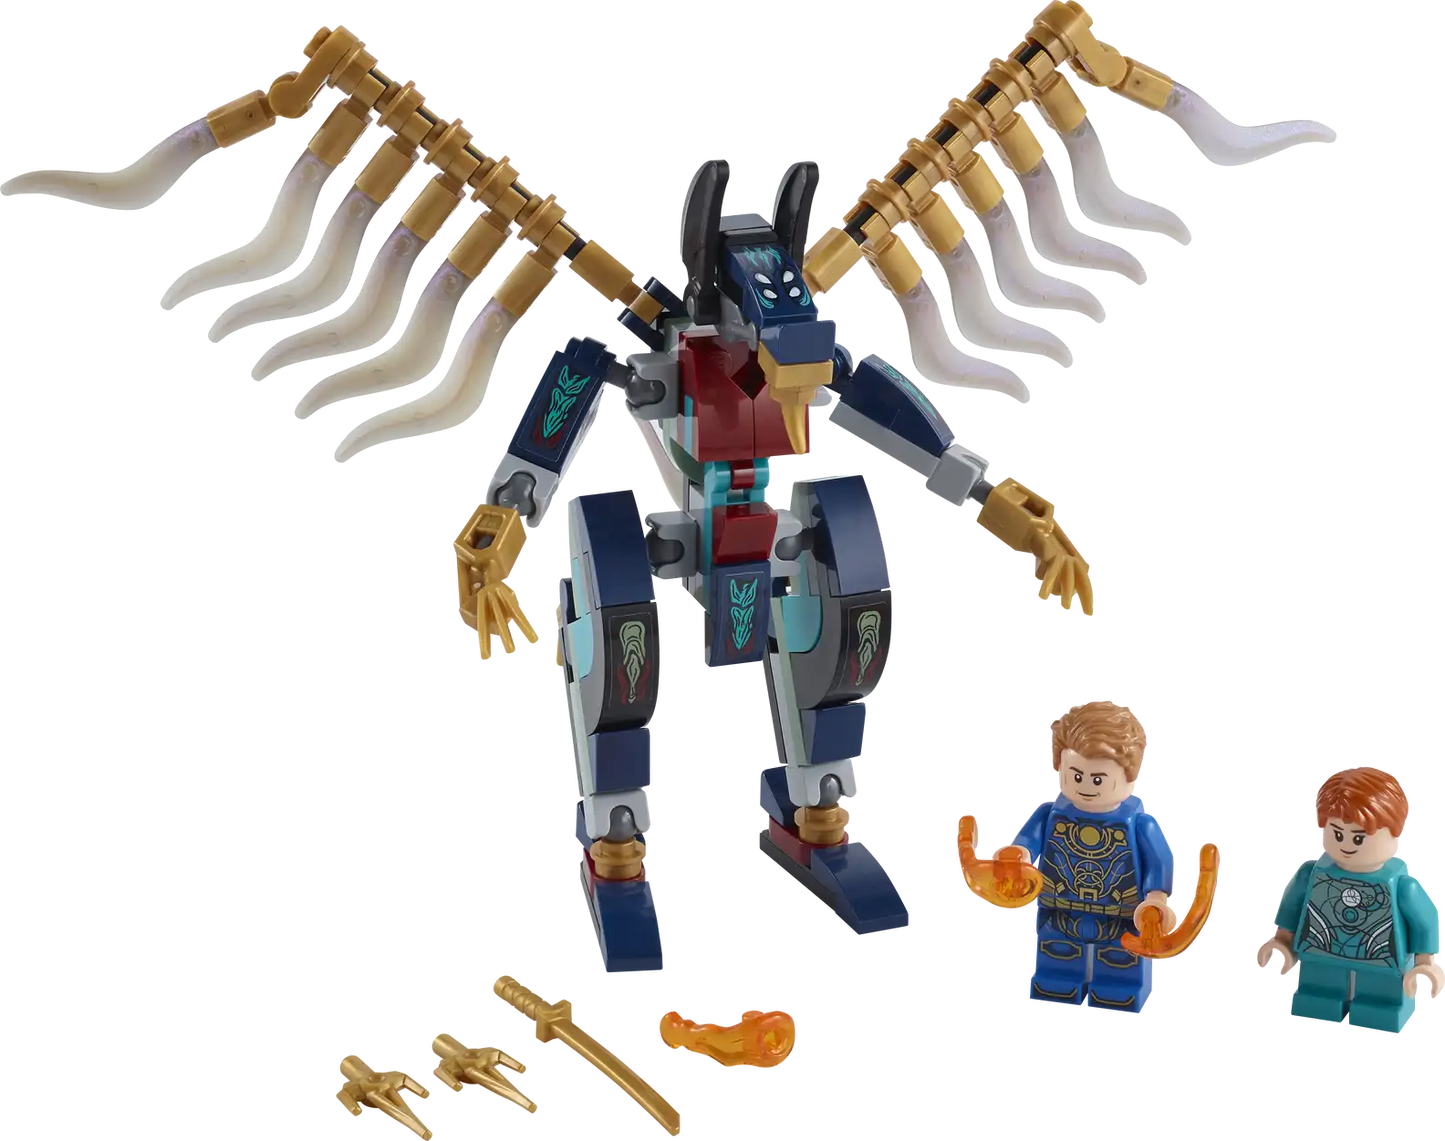 Lego Eternals’ Aerial Assault 76145